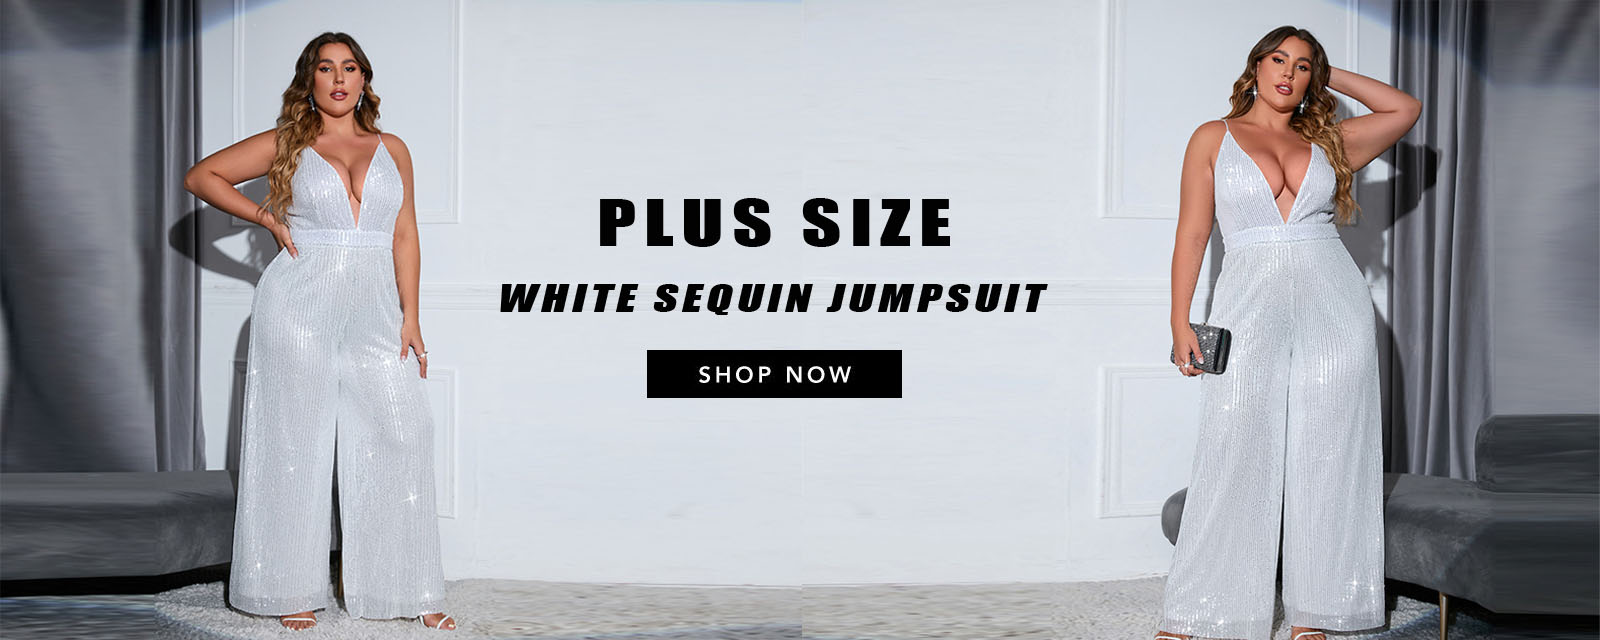 white sequin jumpsuit plus size